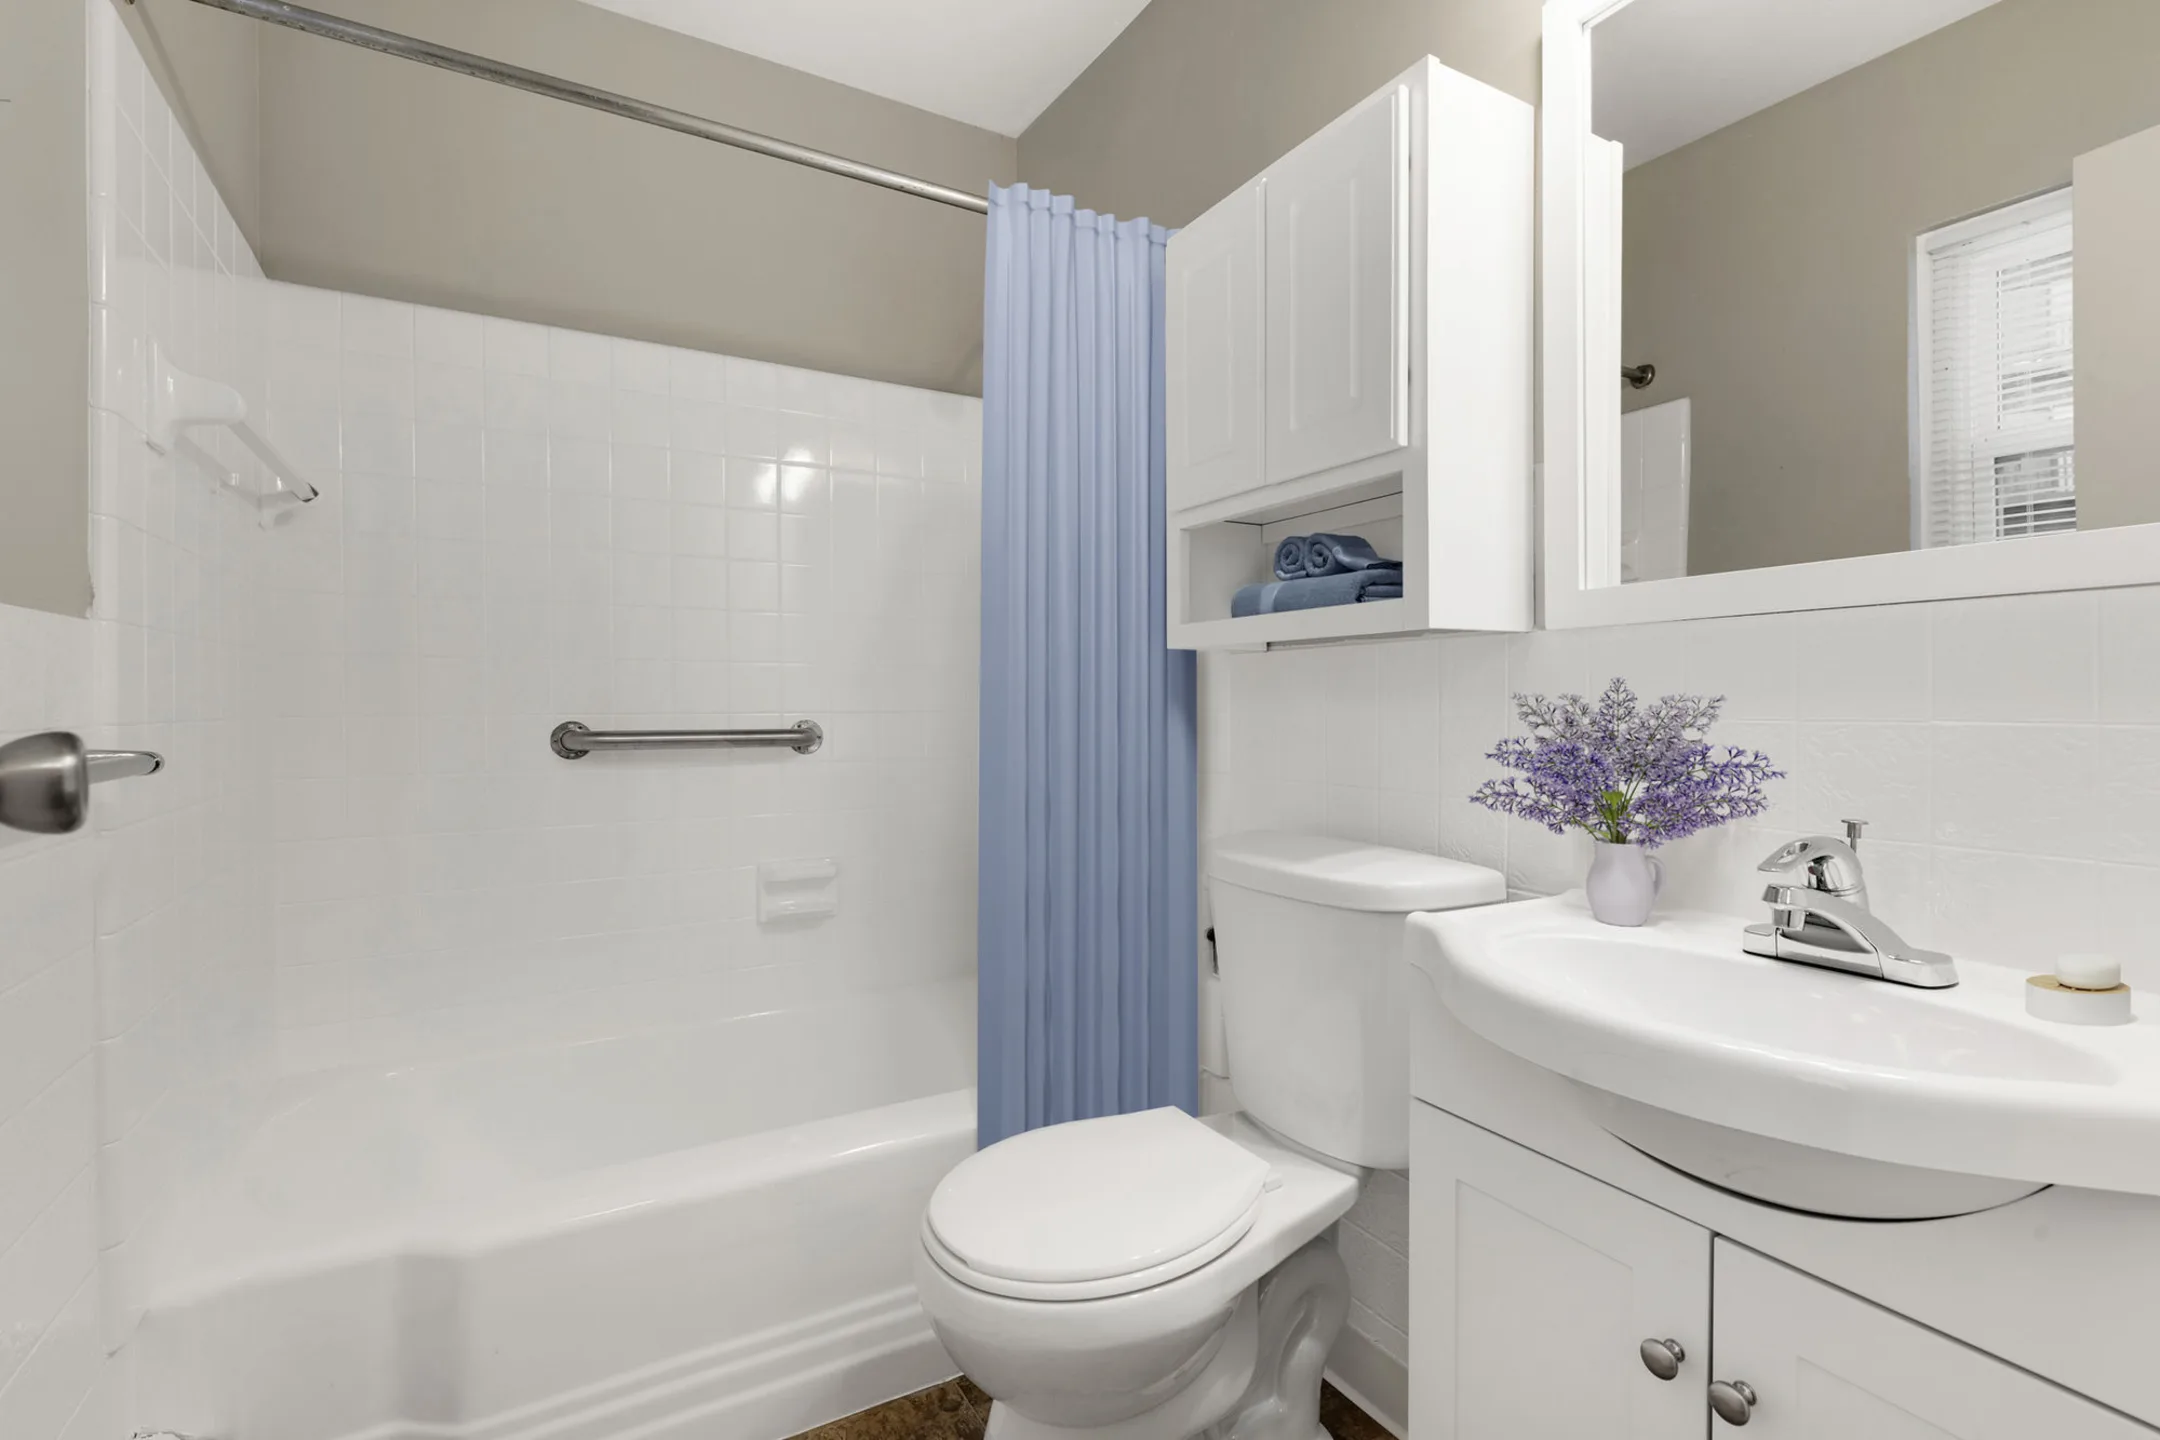 Bathroom - Minikahda Court Apartments - Saint Louis Park, MN